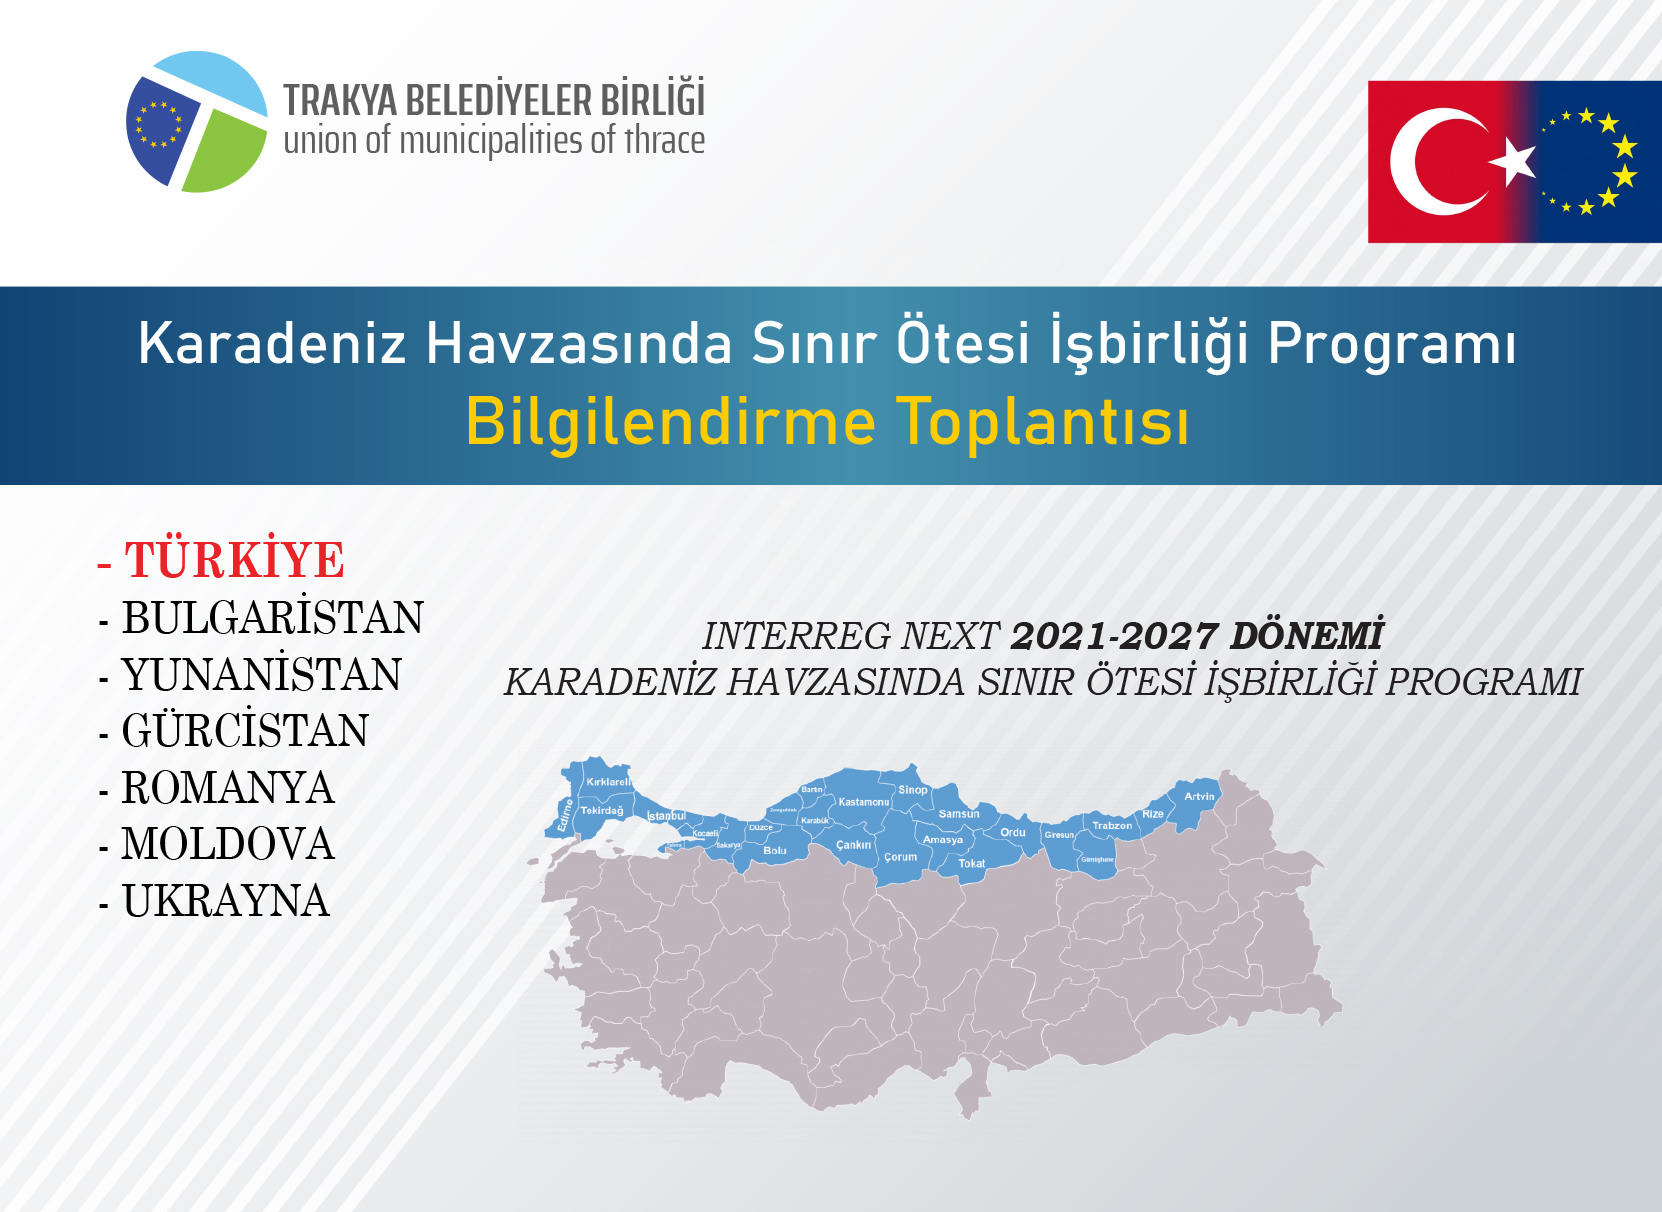 Trakya Belediyeler Birliği, Karadeniz Havzasında Sınır Ötesi İşbirliği Programı Bilgilendirme Toplantısı